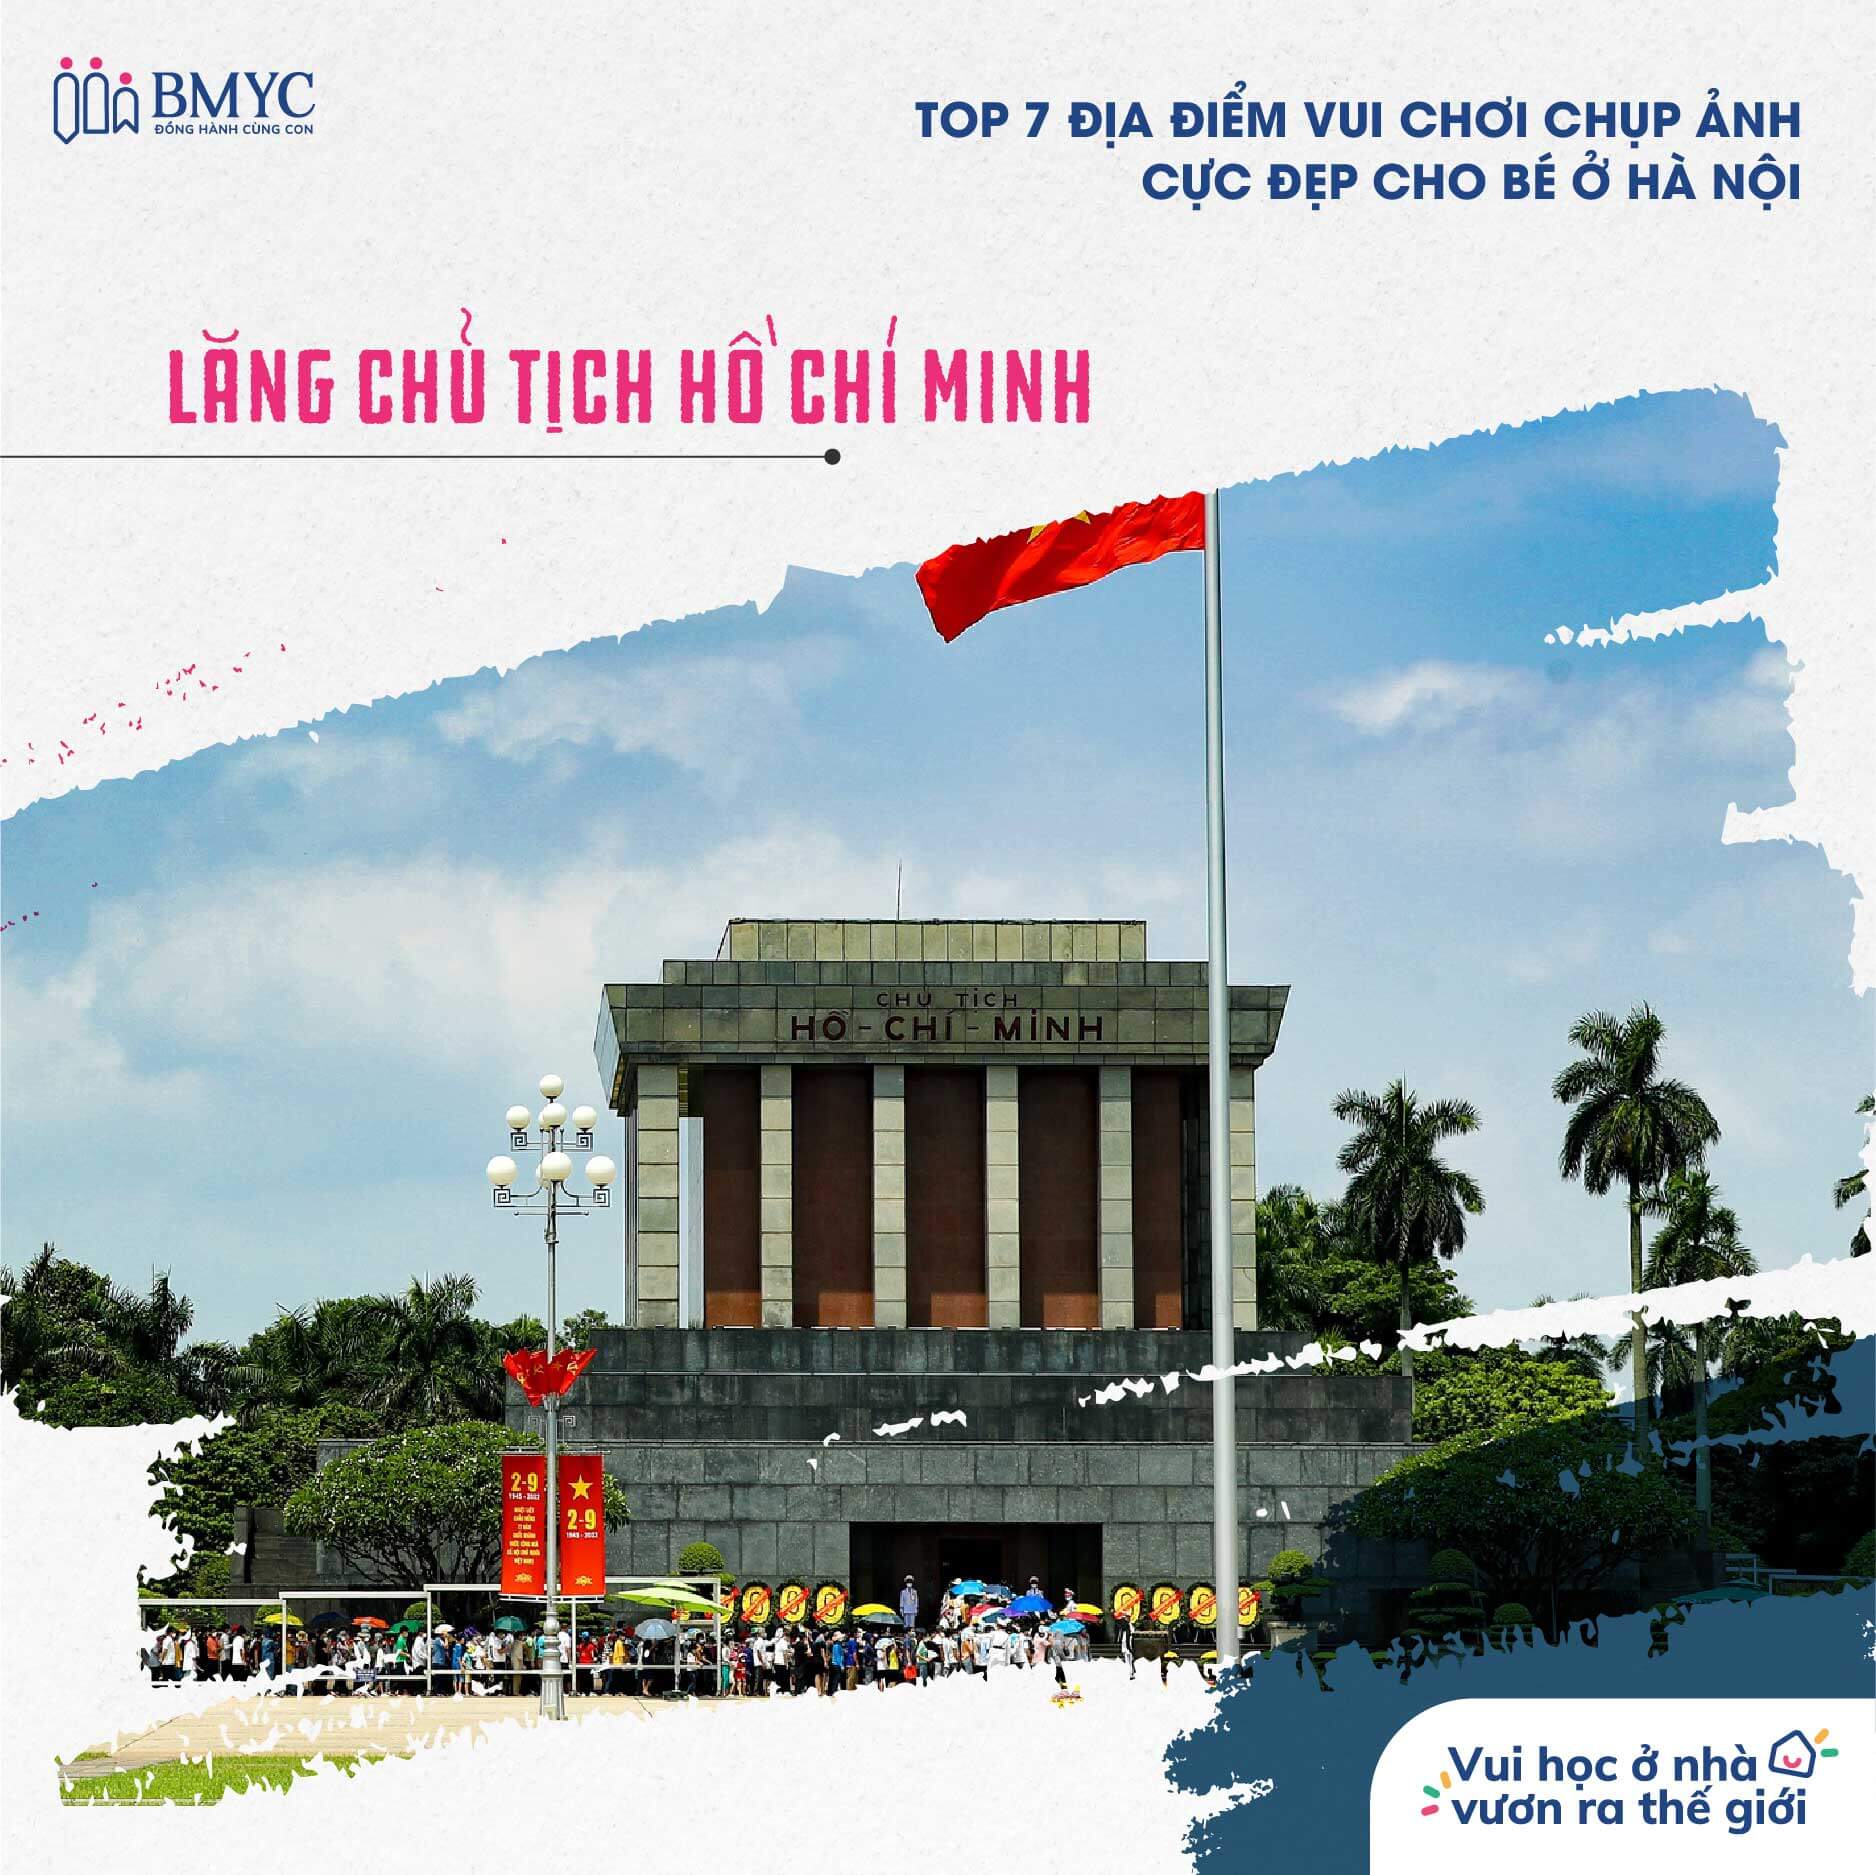 Top 7 địa điểm du lịch tại Hà Nội